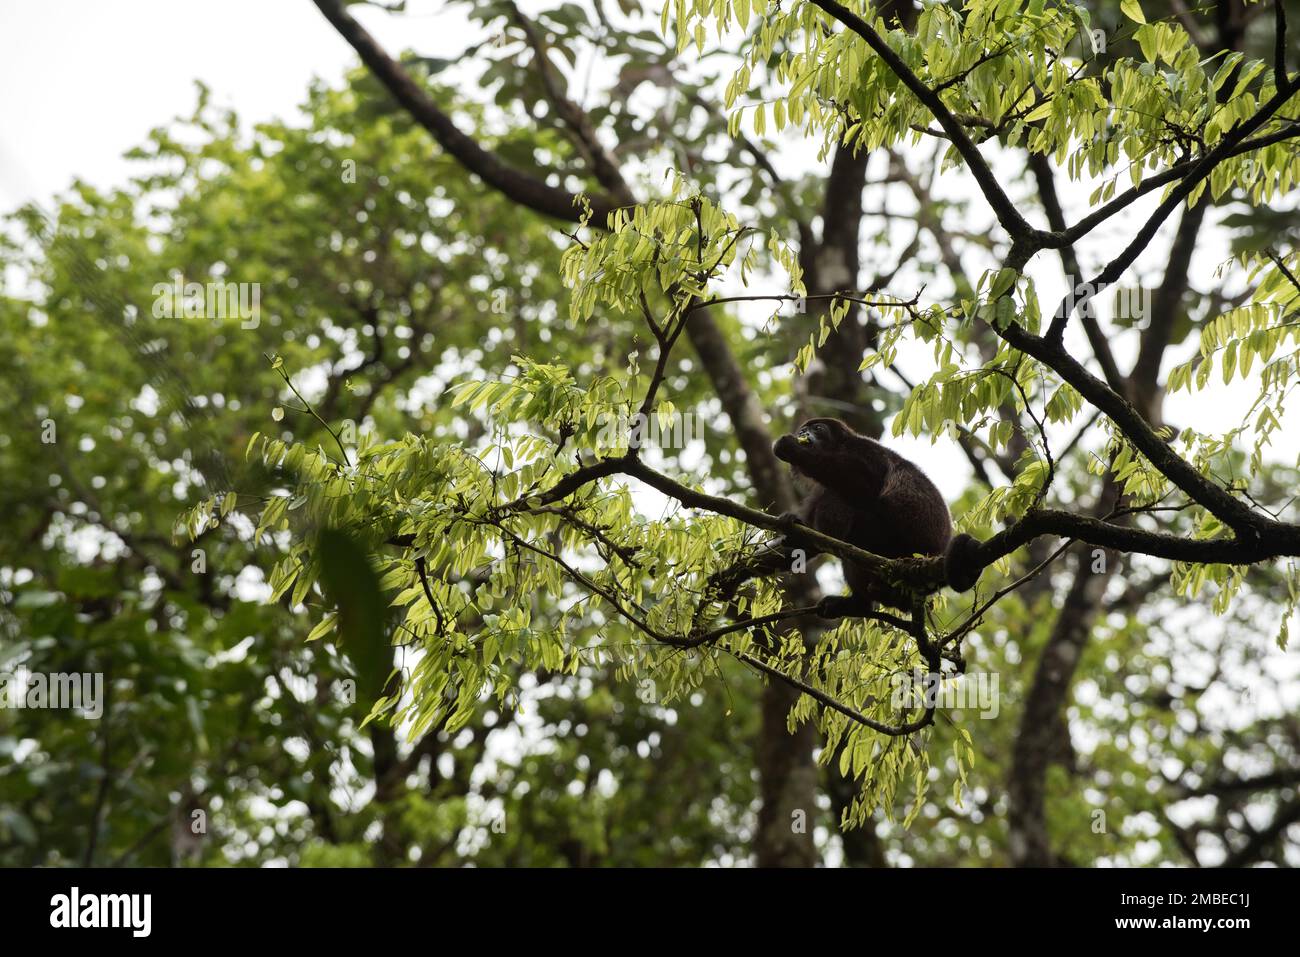 Brüllaffe im Costa-ricanischen Regenwald, hoch oben auf einem Ast, isst Blätter. Singe Hurleur dans la forêt Tropical du Costa Rica Perché Stockfoto